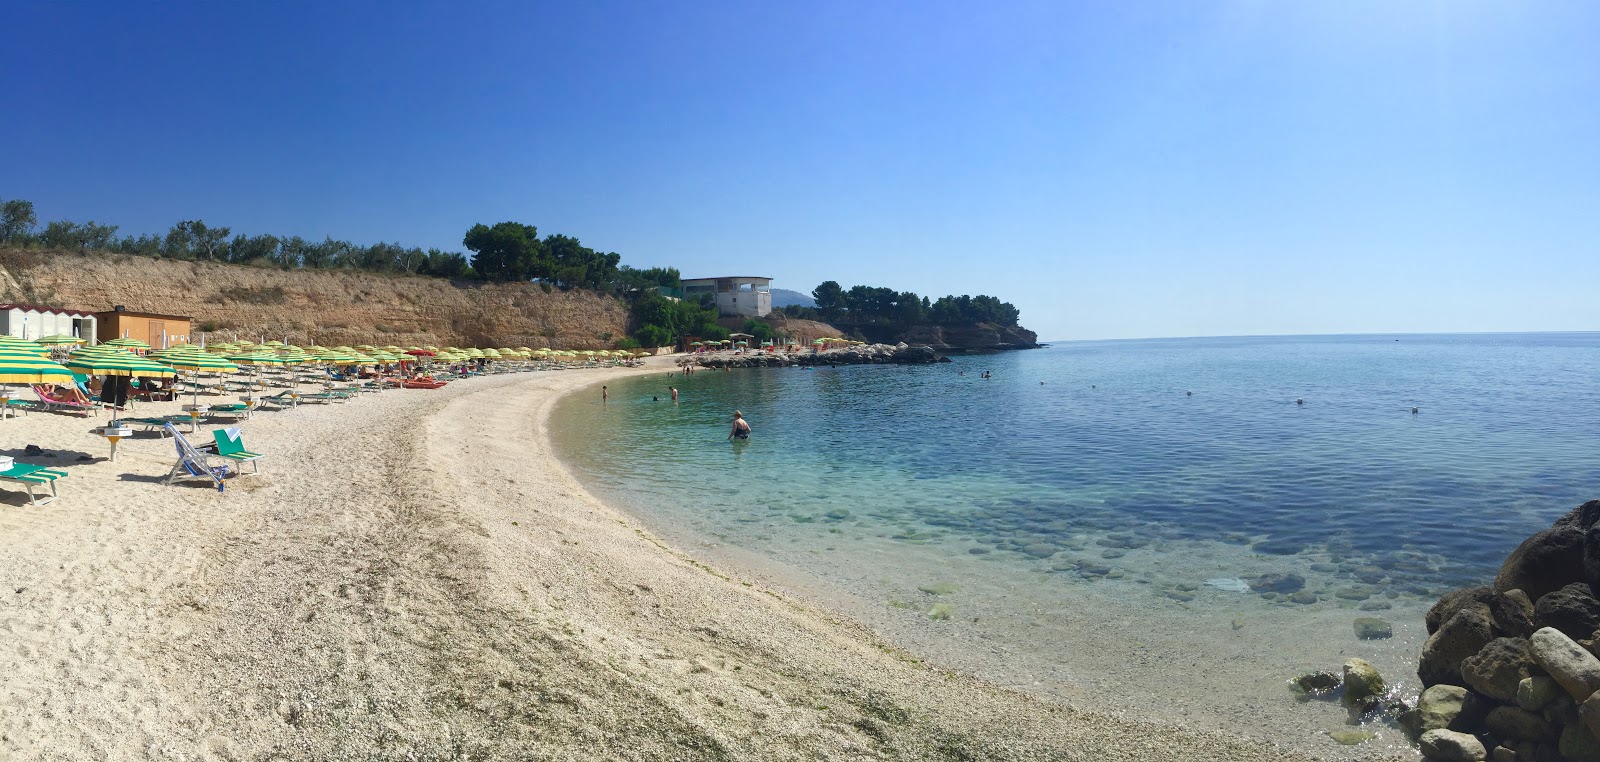 Lido Macchia Plajı'in fotoğrafı parlak kum yüzey ile